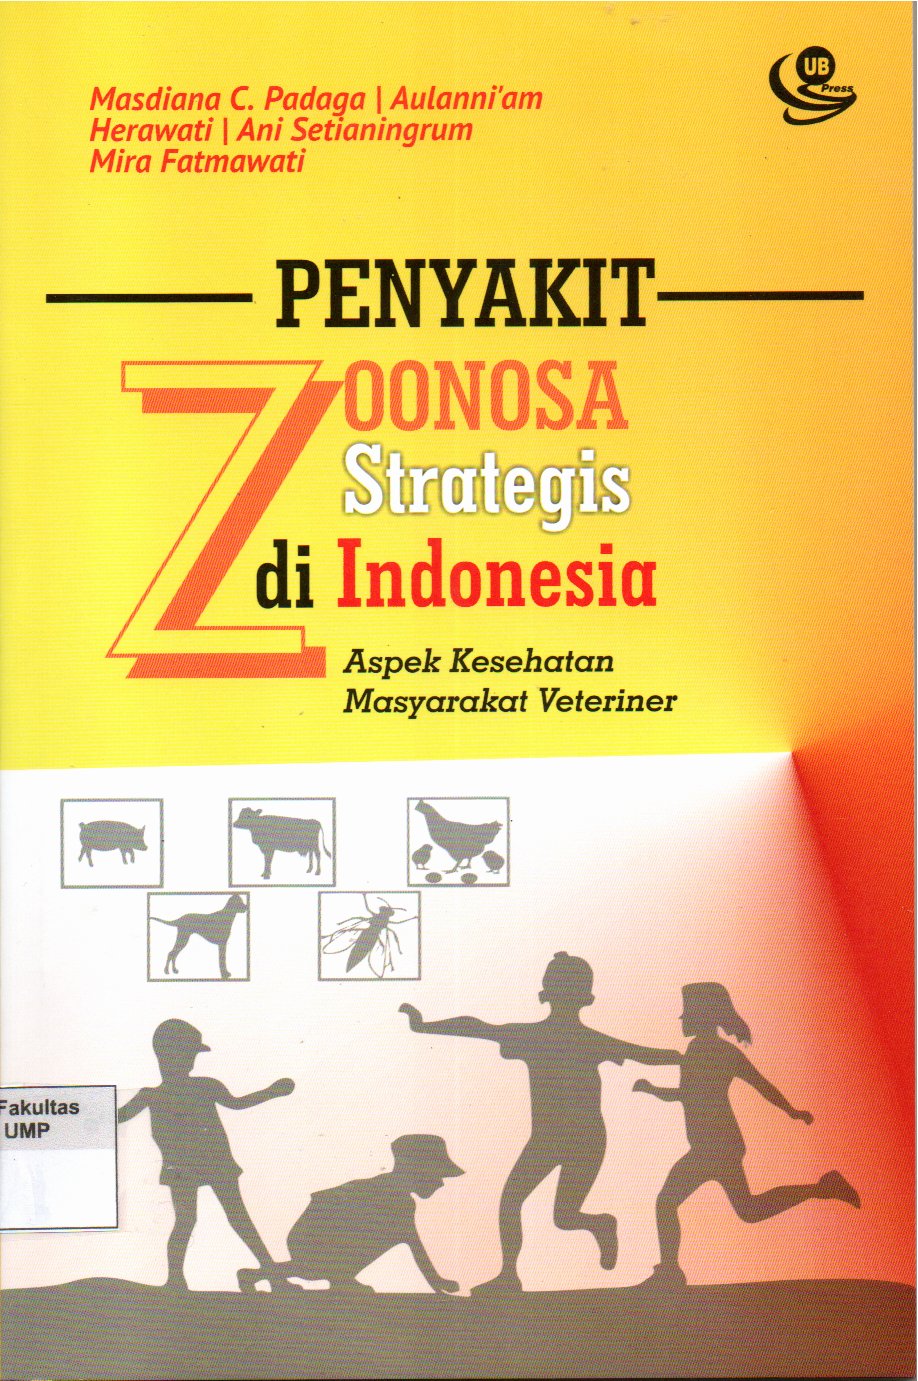 Penyakit zoonosa strategis di Indonesia